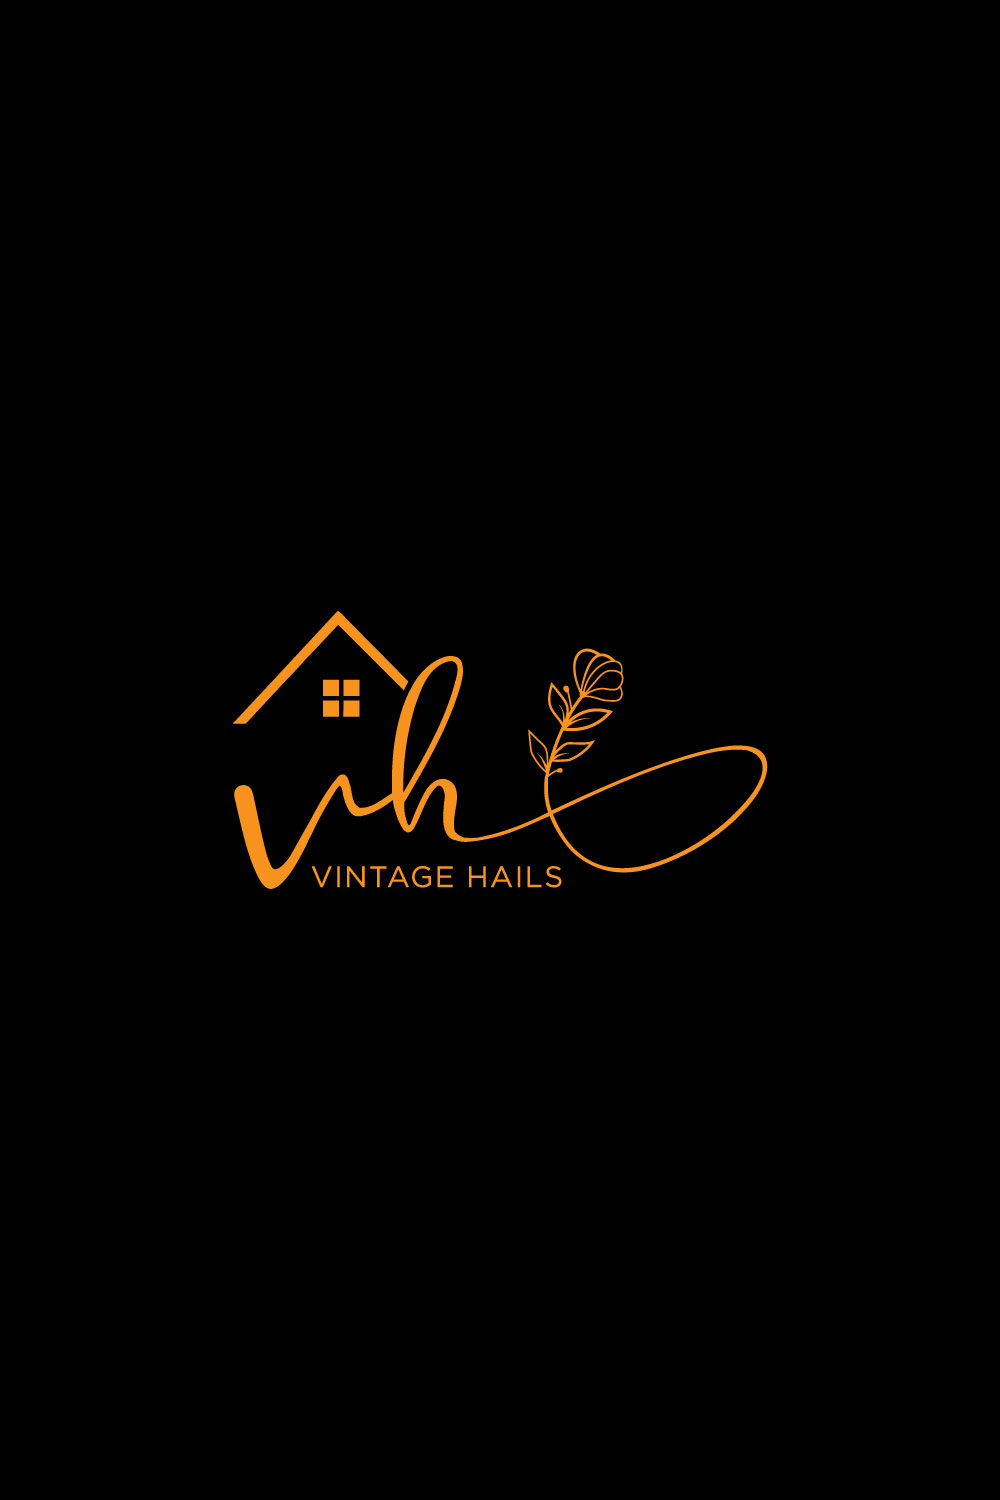 VH Real Estate Logo Design pinterest image.